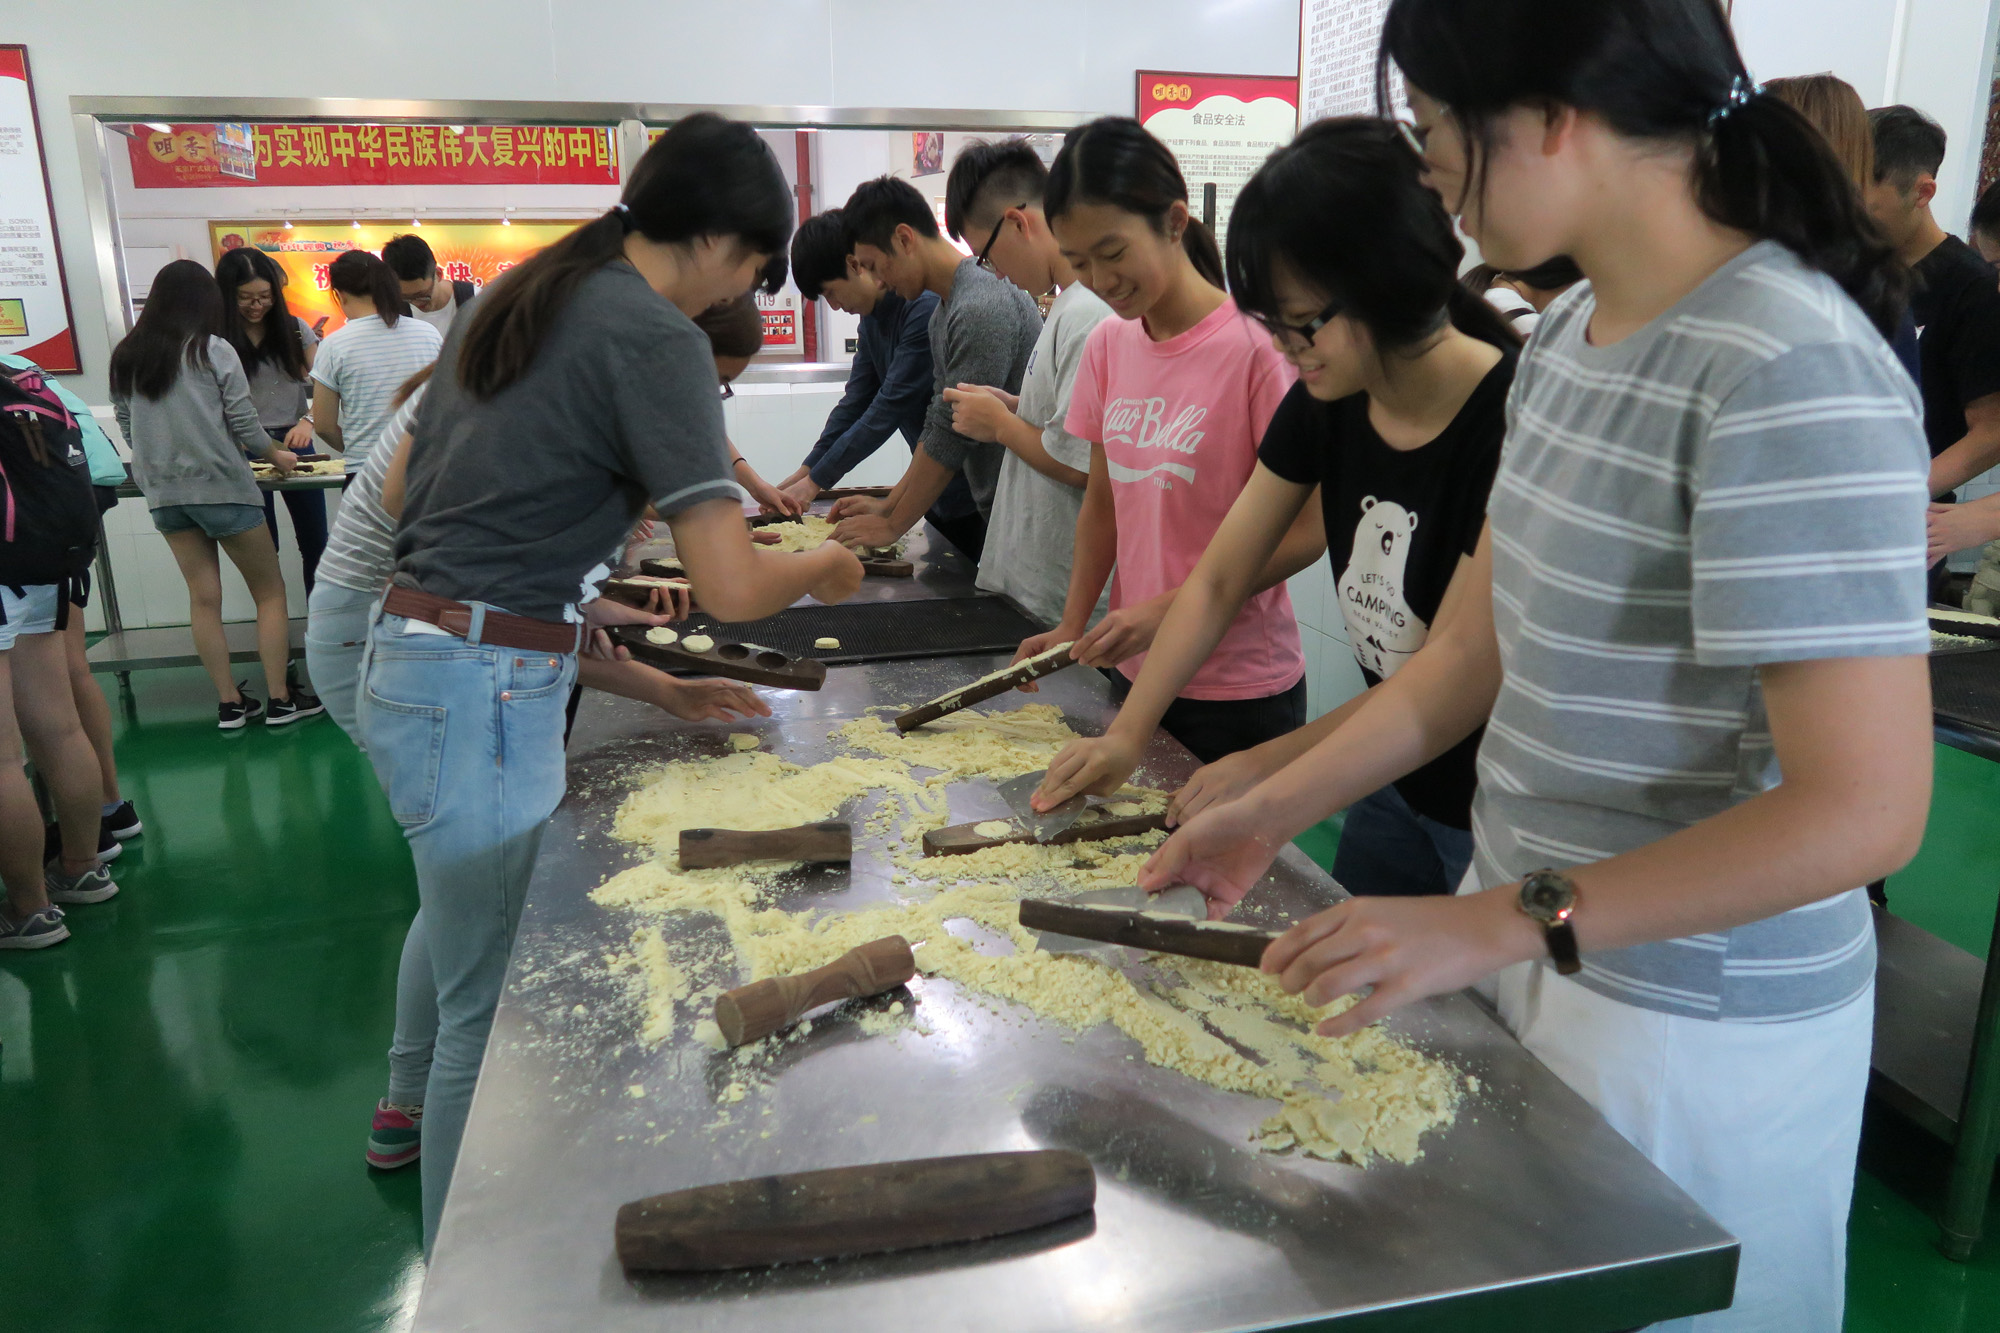 為了讓同學理解到食品生產過程中每個步驟都非常嚴謹，特別安排同學親身體驗製作杏仁餅。